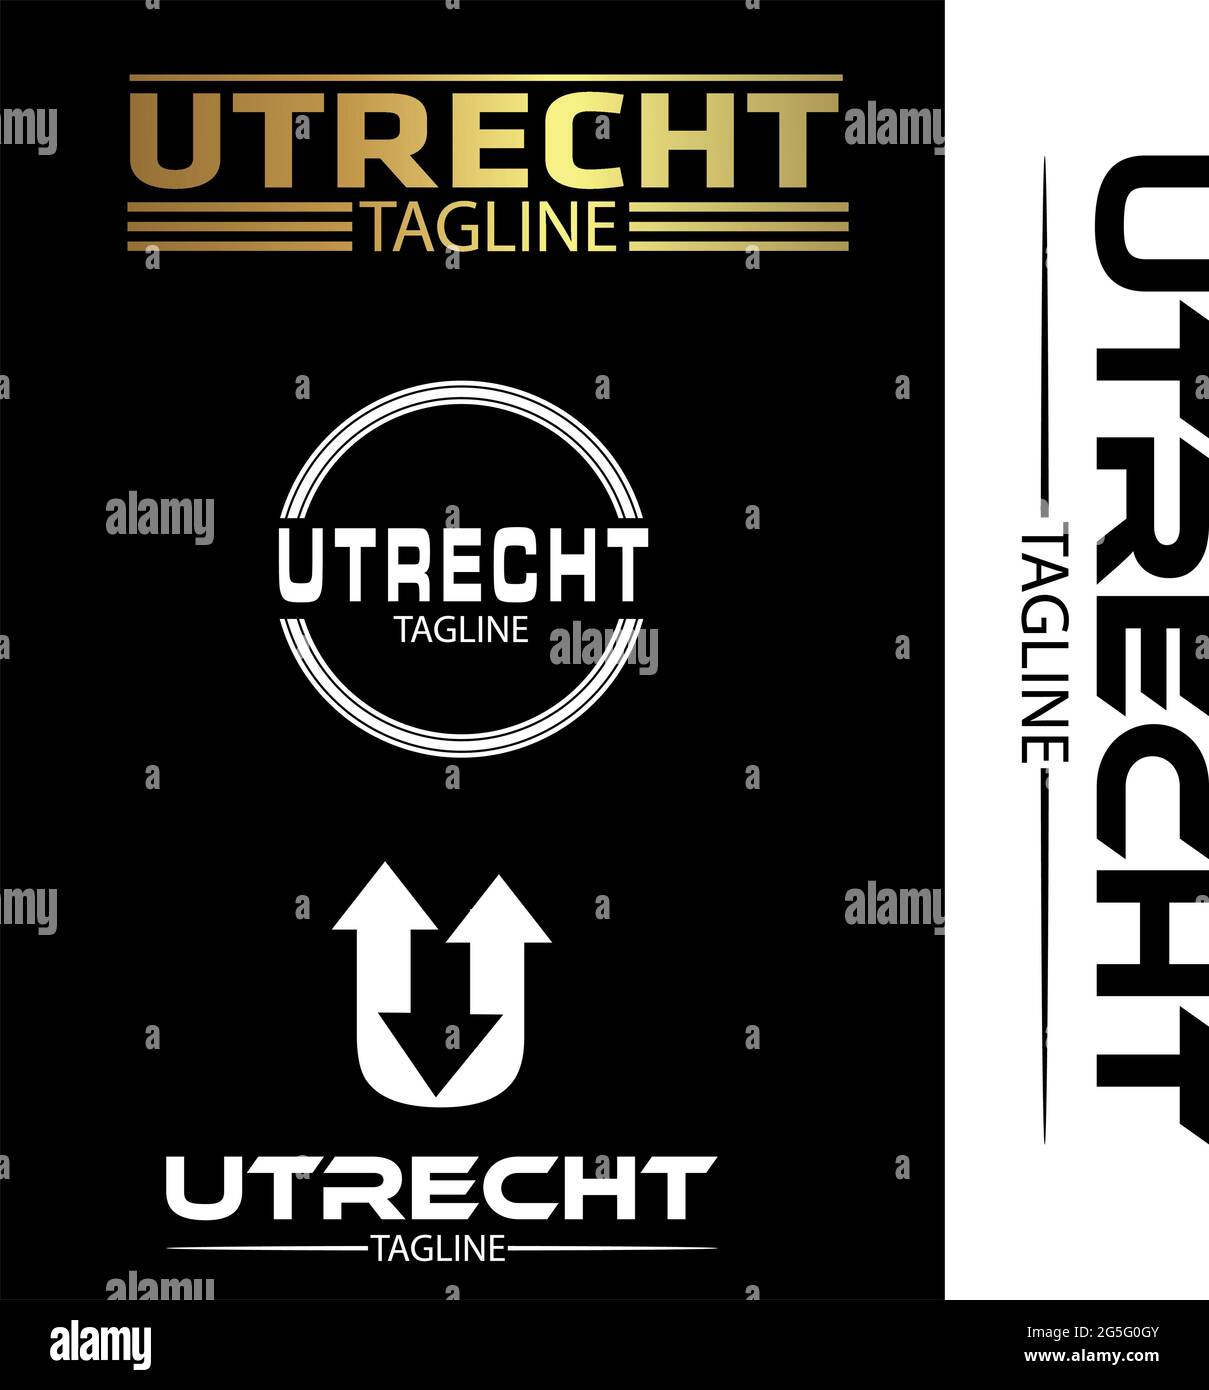 Utrecht Typografie-Set, flache Designs. Stock Vektor